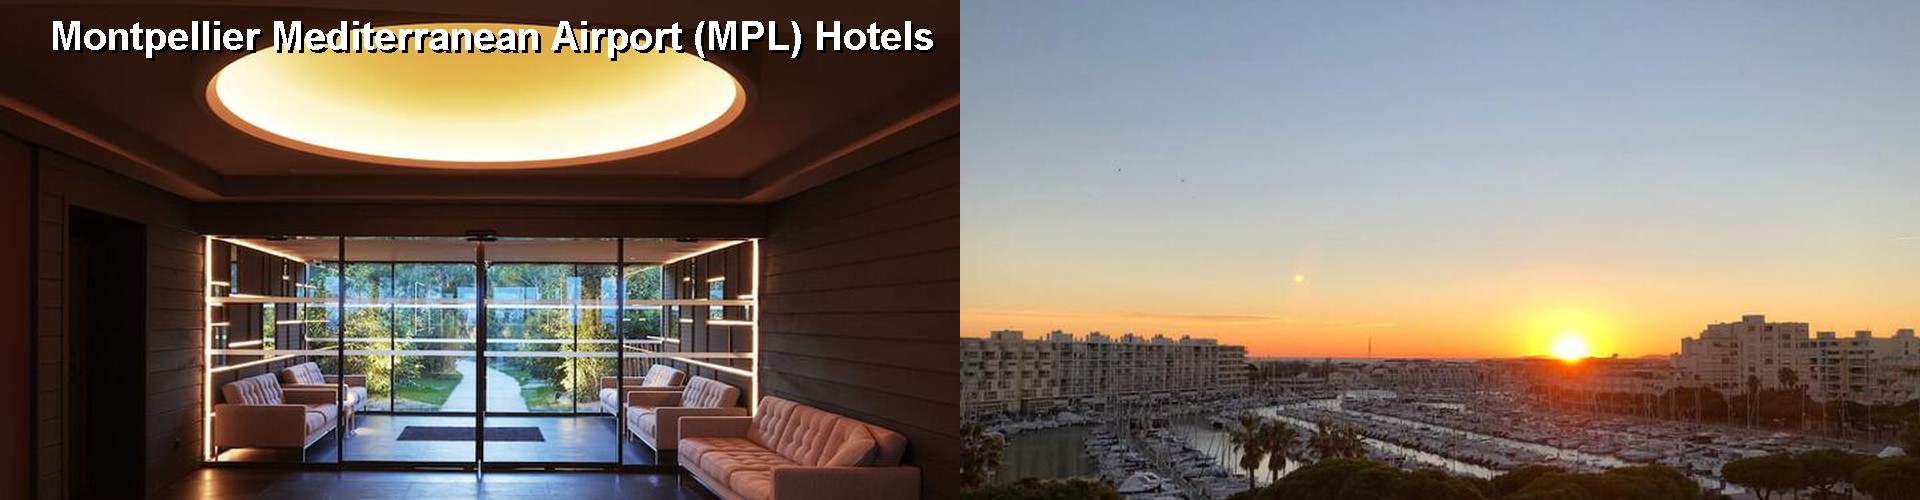 5 Best Hotels near Montpellier Mediterranean Airport (MPL)